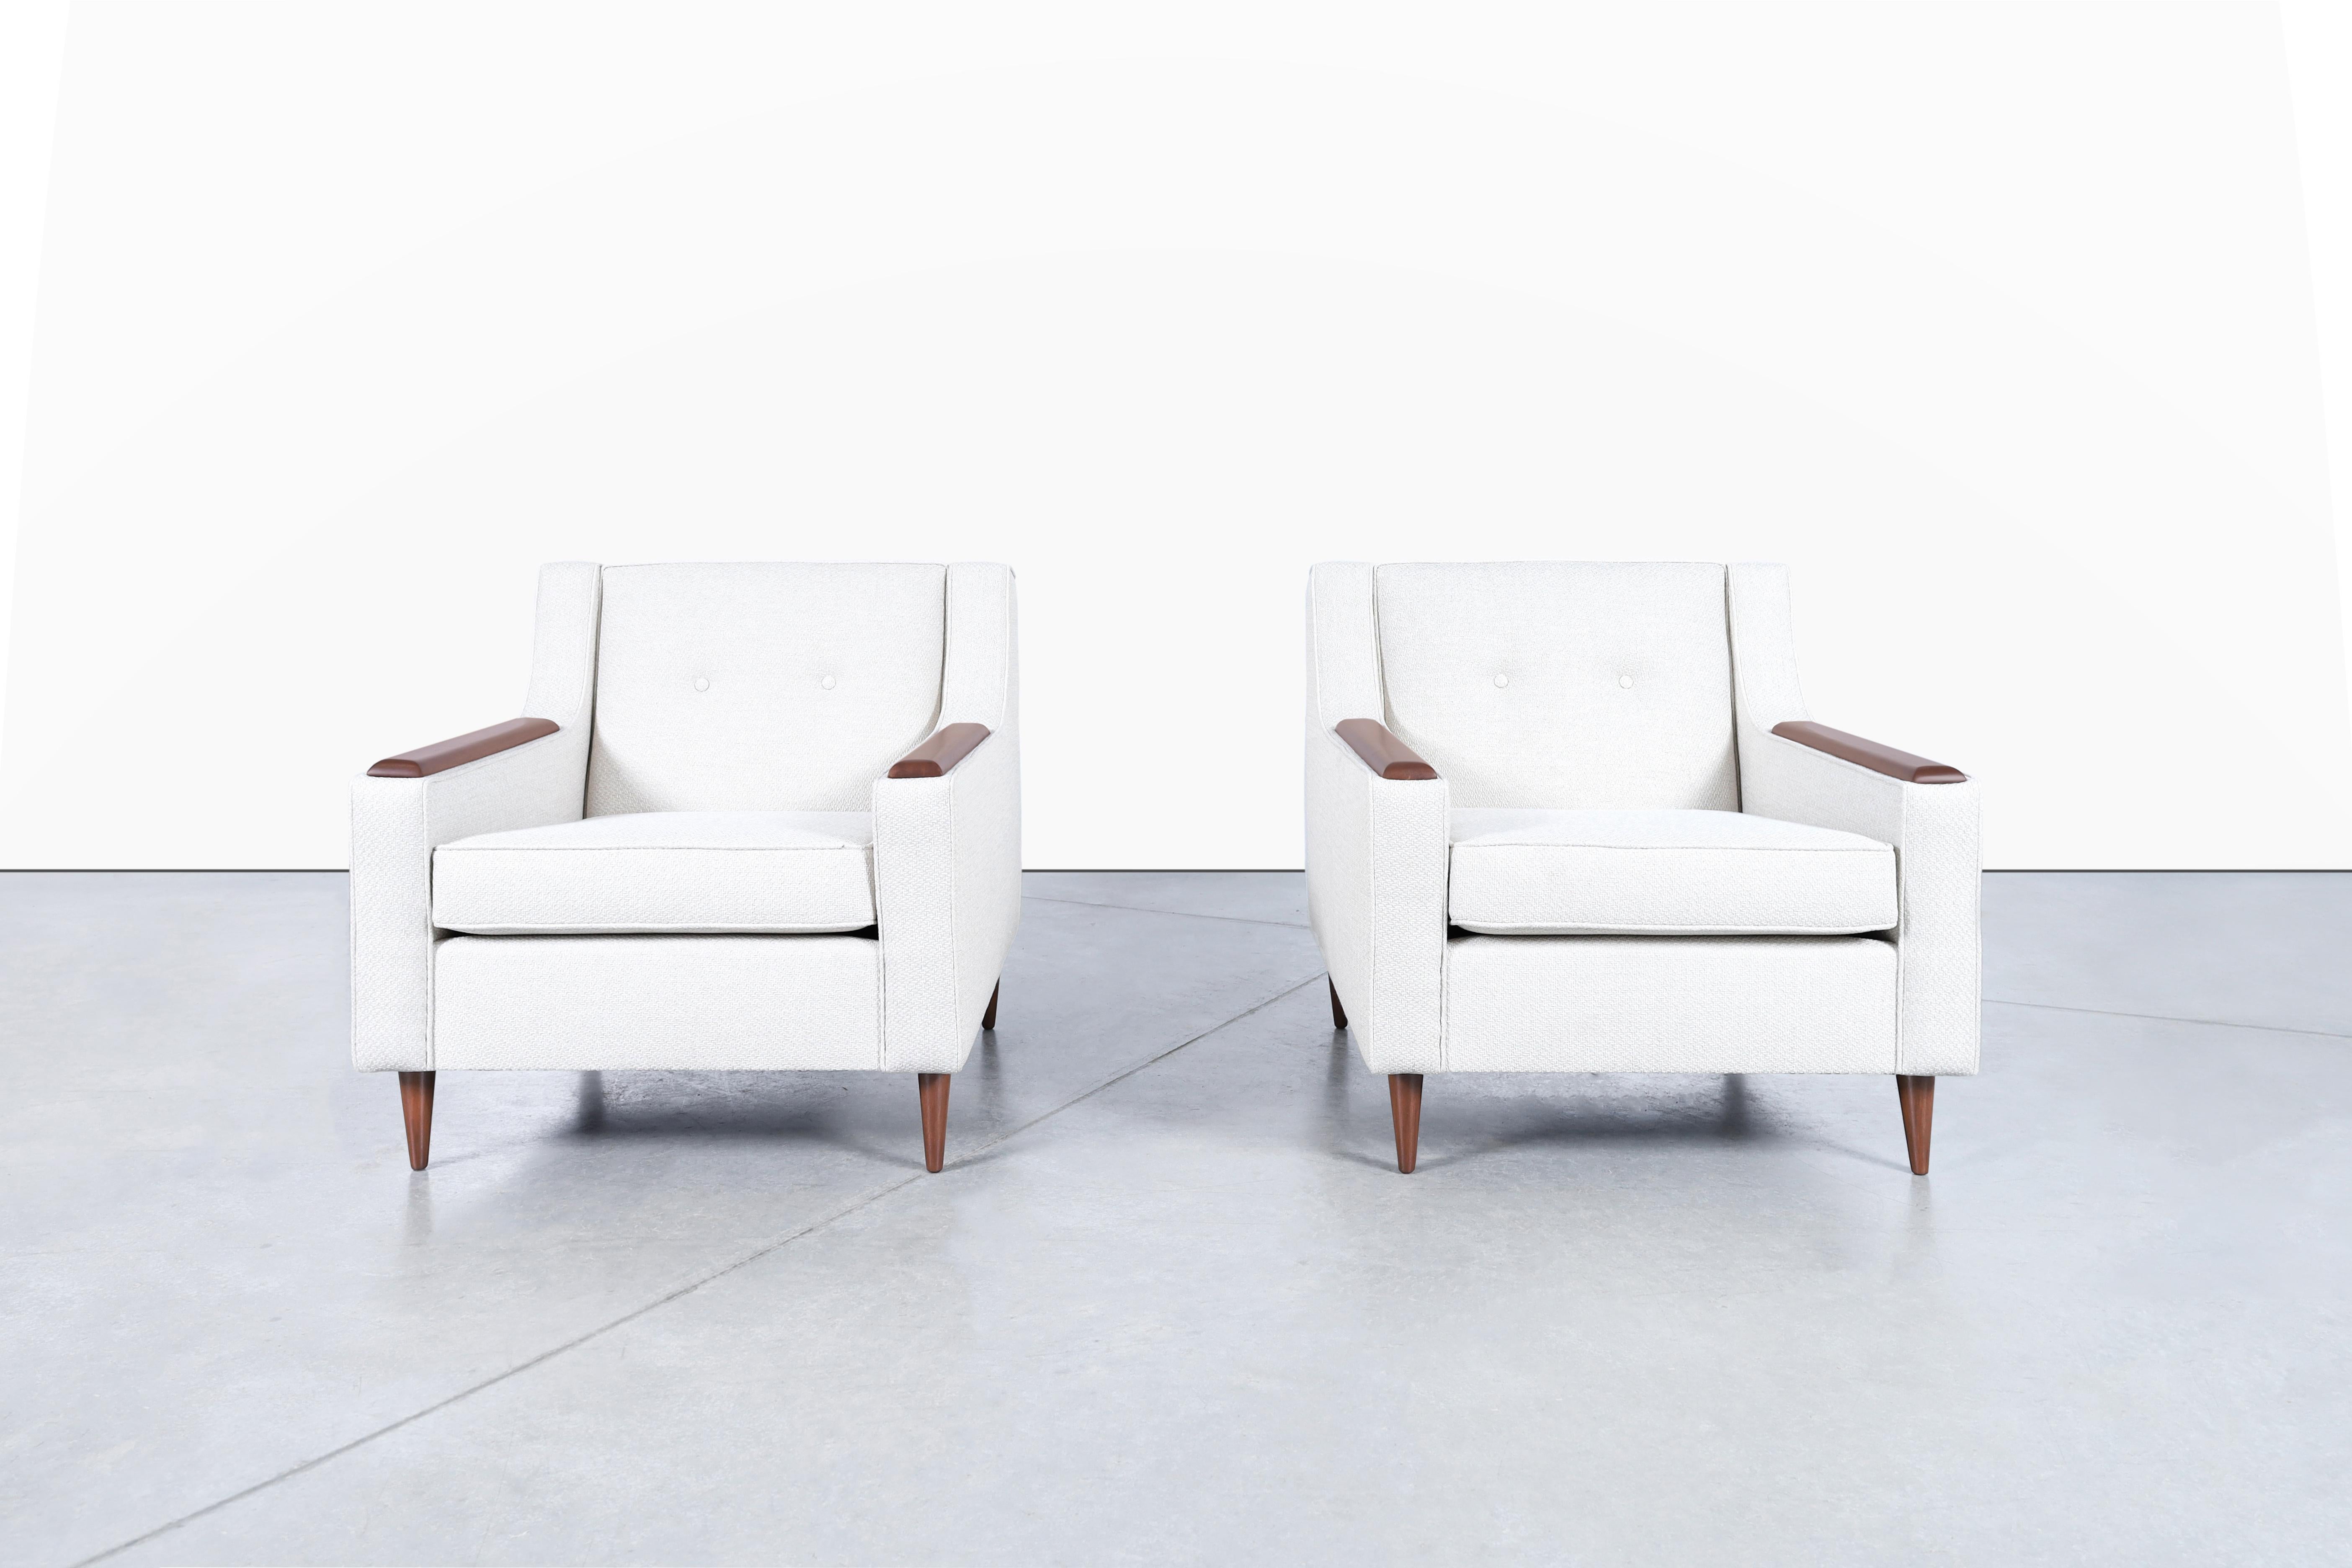 Fabuleux fauteuils de salon en noyer de style moderne du milieu du siècle, conçus aux États-Unis, vers les années 1950. Ces chaises ont été professionnellement remises à neuf et retapissées dans un tissu ton sur ton de couleur Whitewater Bay. Feal